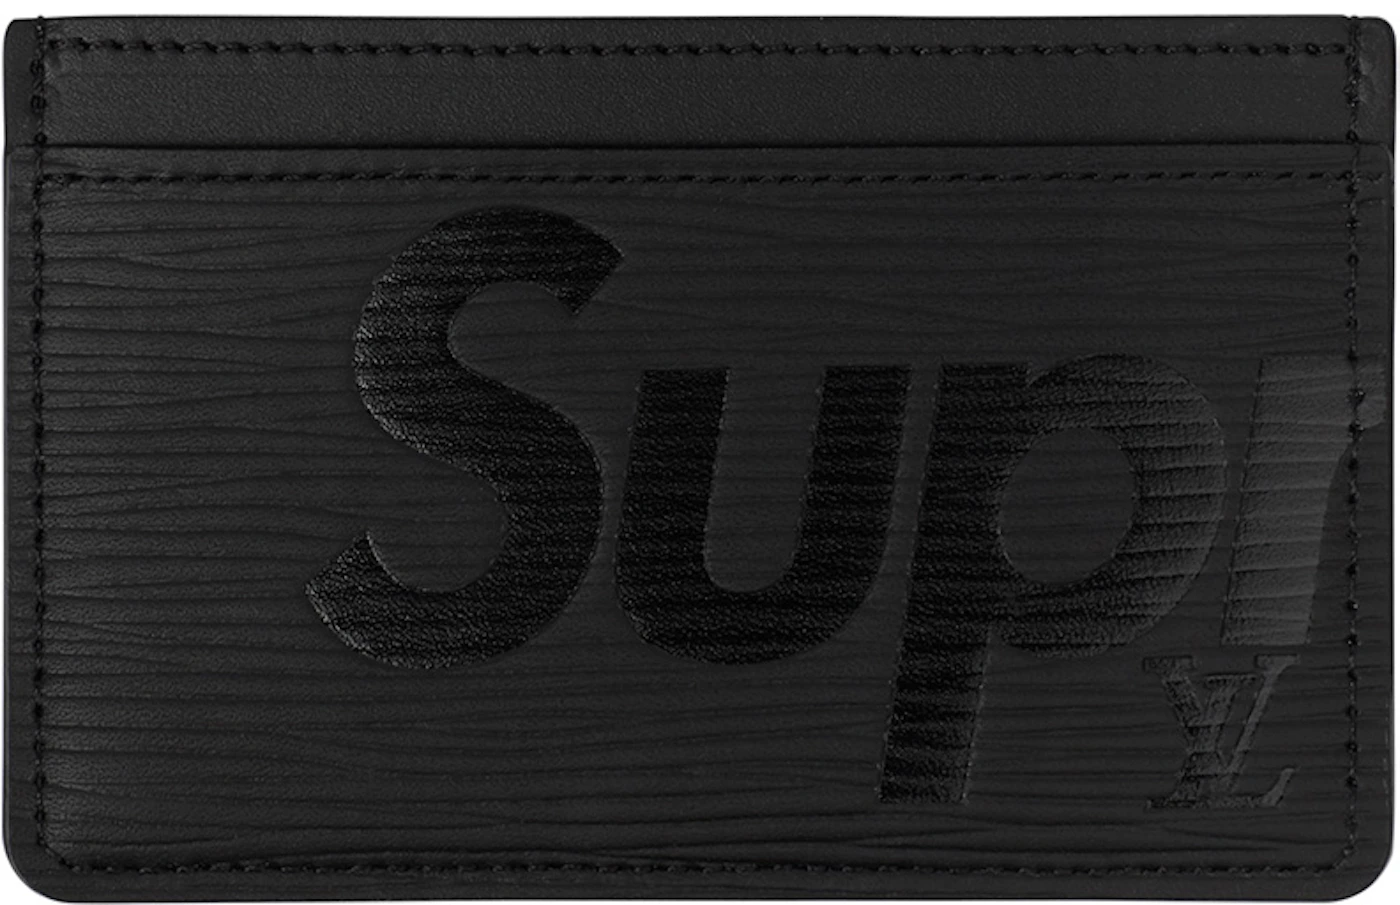 Louis Vuitton x Supreme Porte Carte Simple Epi Black - US